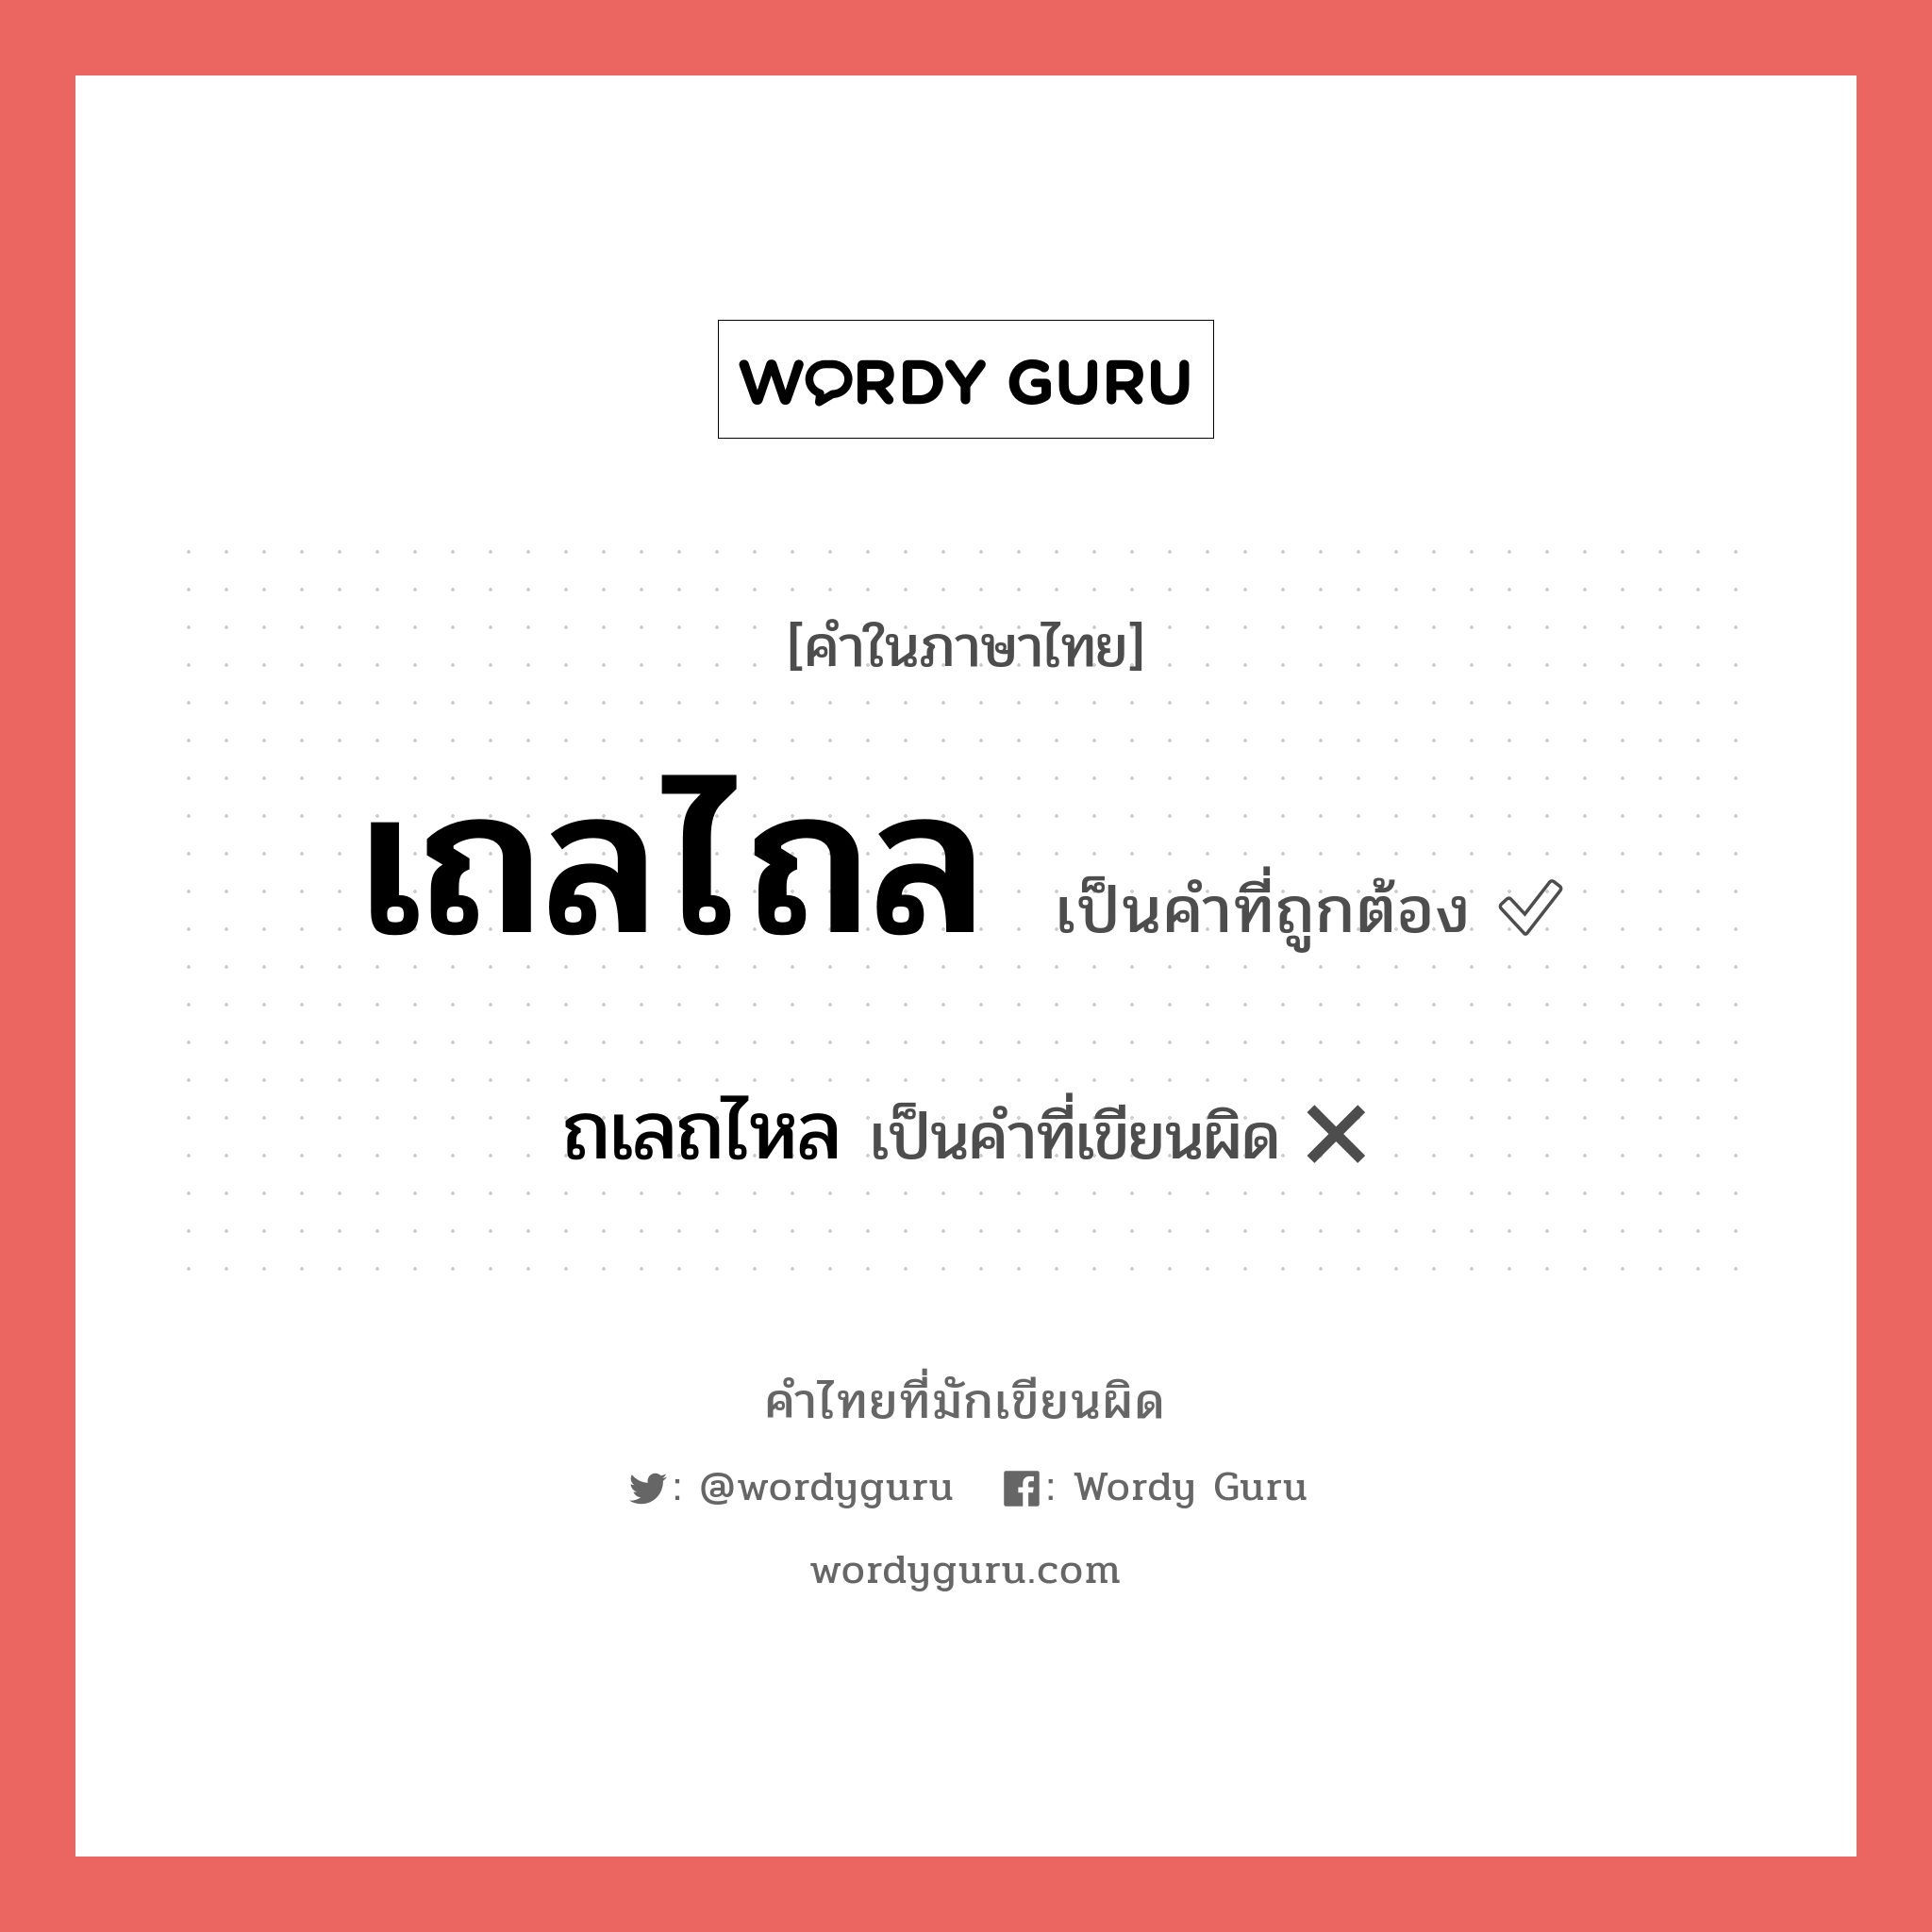 เถลไถล หรือ ถเลถไหล คำไหนเขียนถูก?, คำในภาษาไทยที่มักเขียนผิด เถลไถล คำที่ผิด ❌ ถเลถไหล